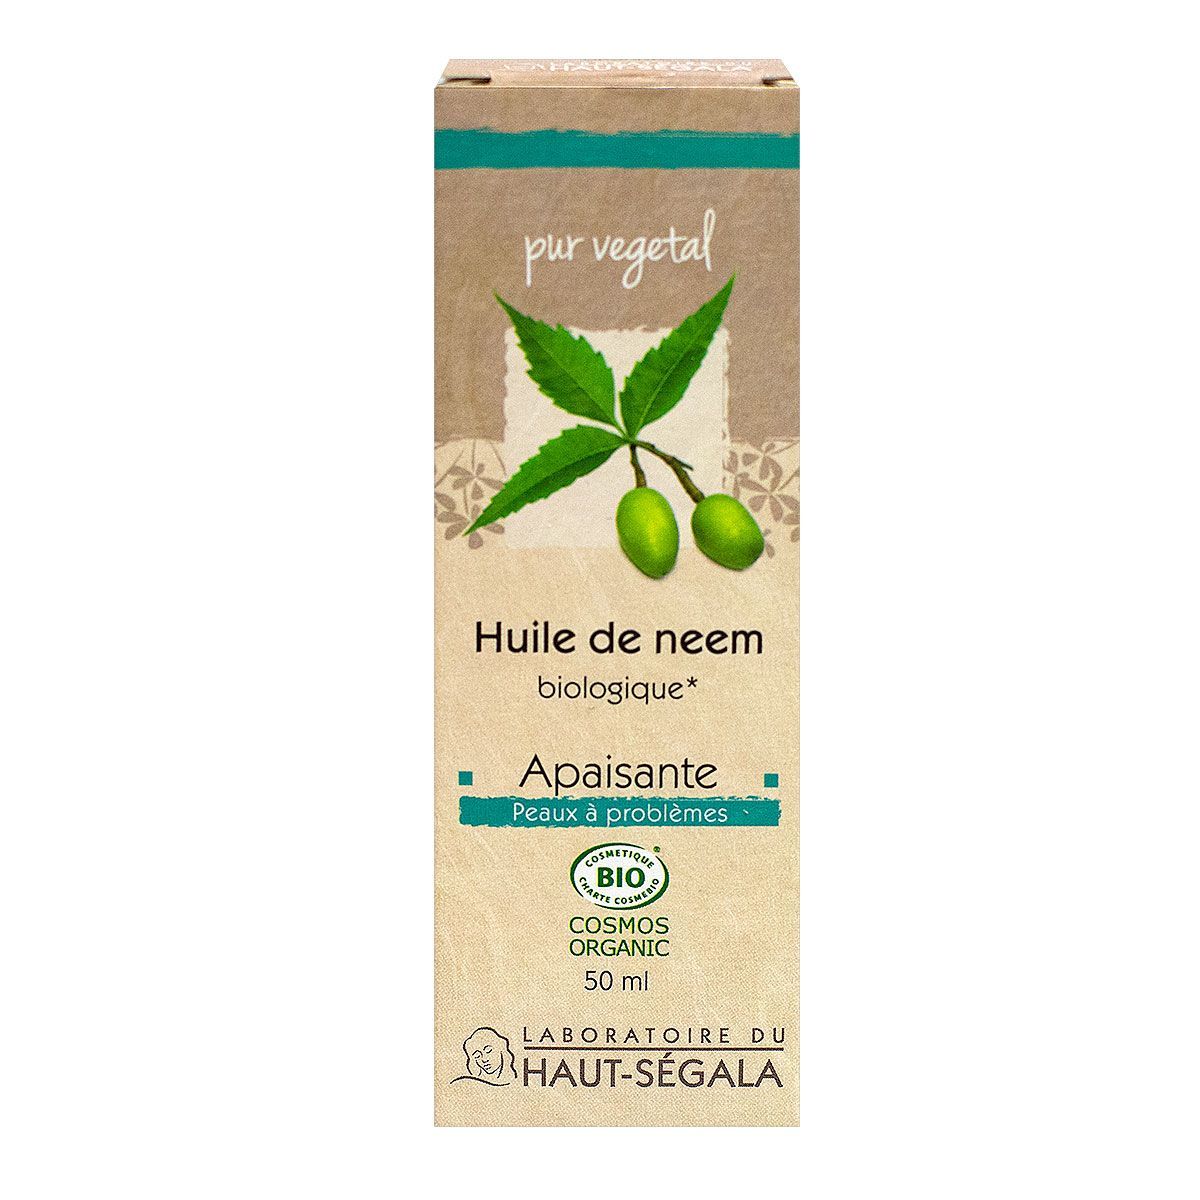 L'huile de neem Haut-Segala est très utilisée dans la médecine